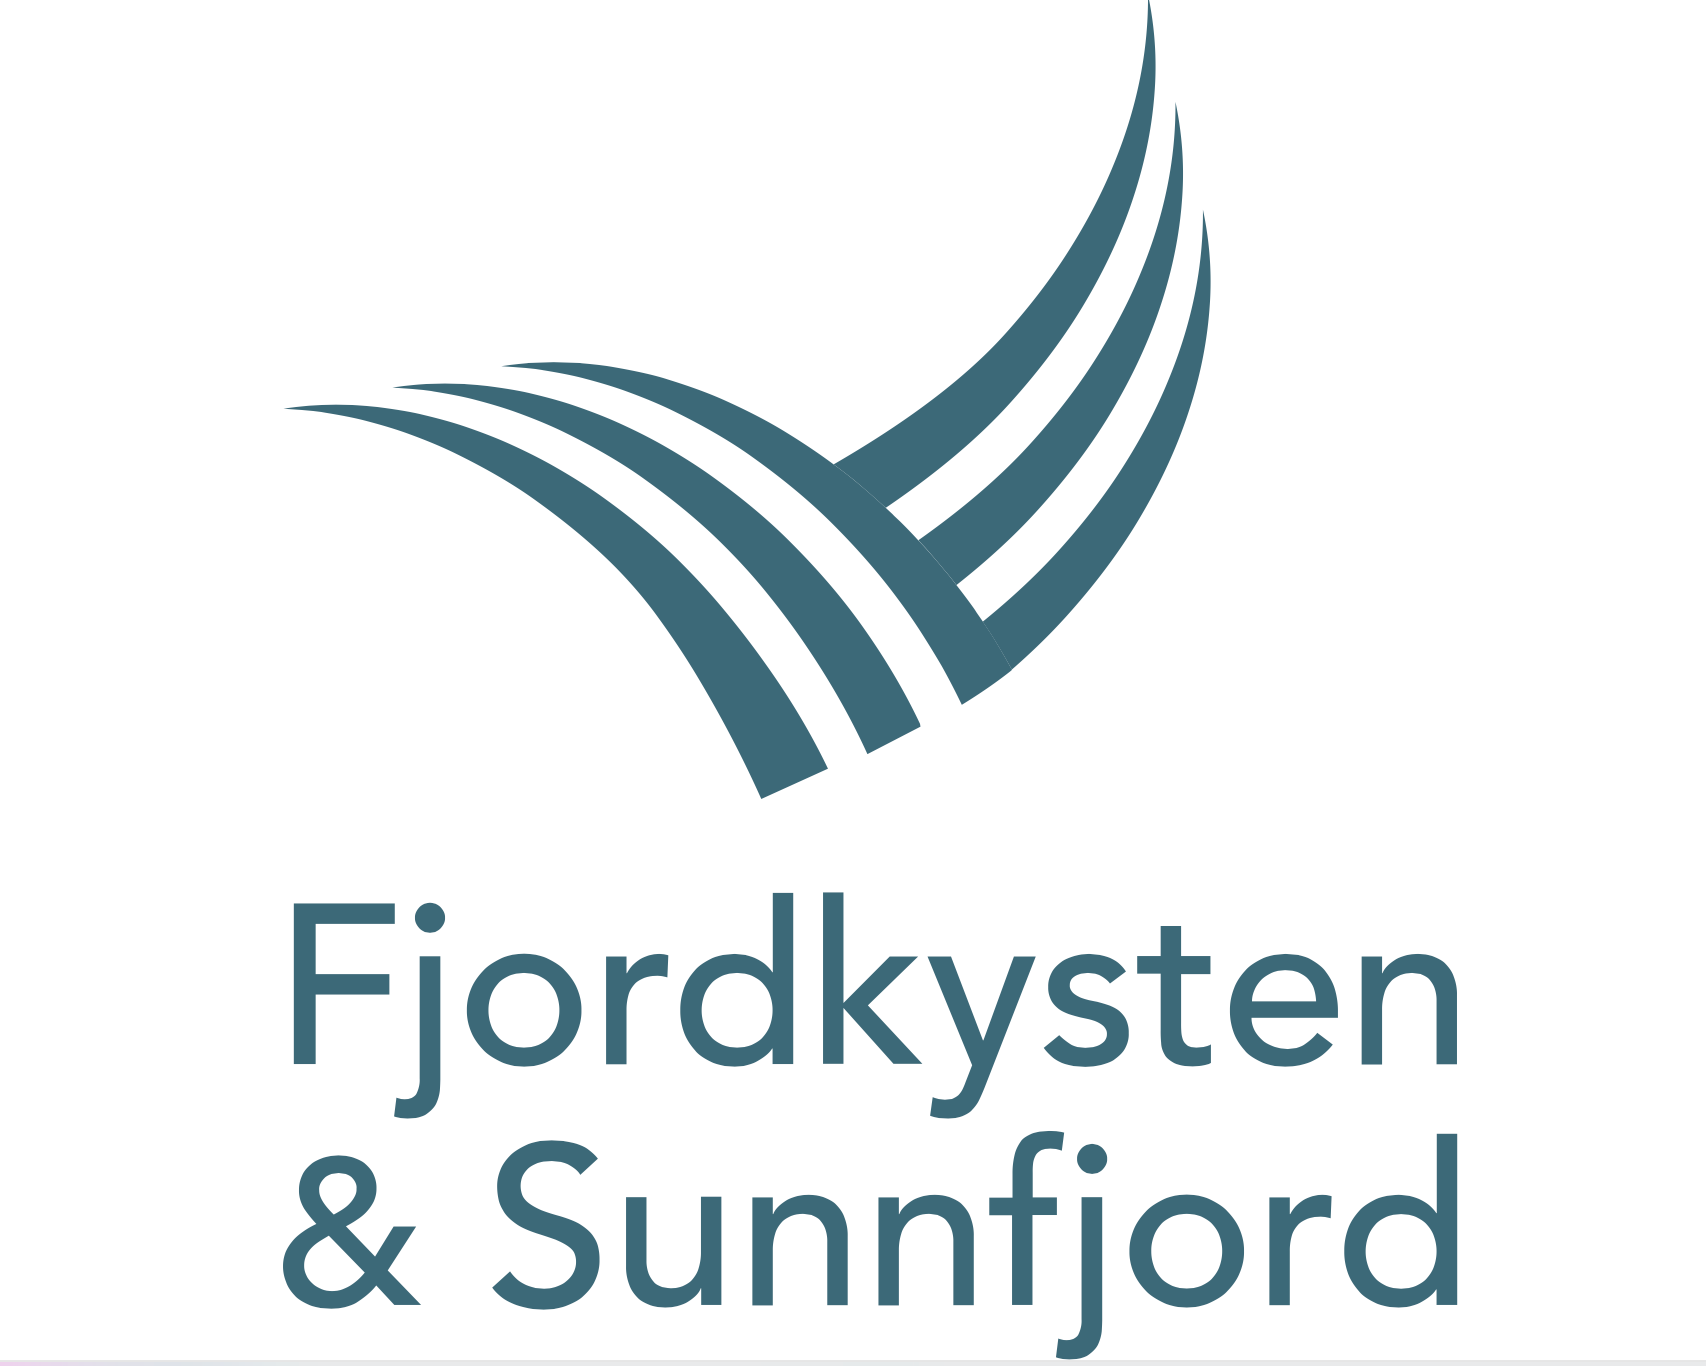 Fjordkysten & Sunnfjord's primary logo